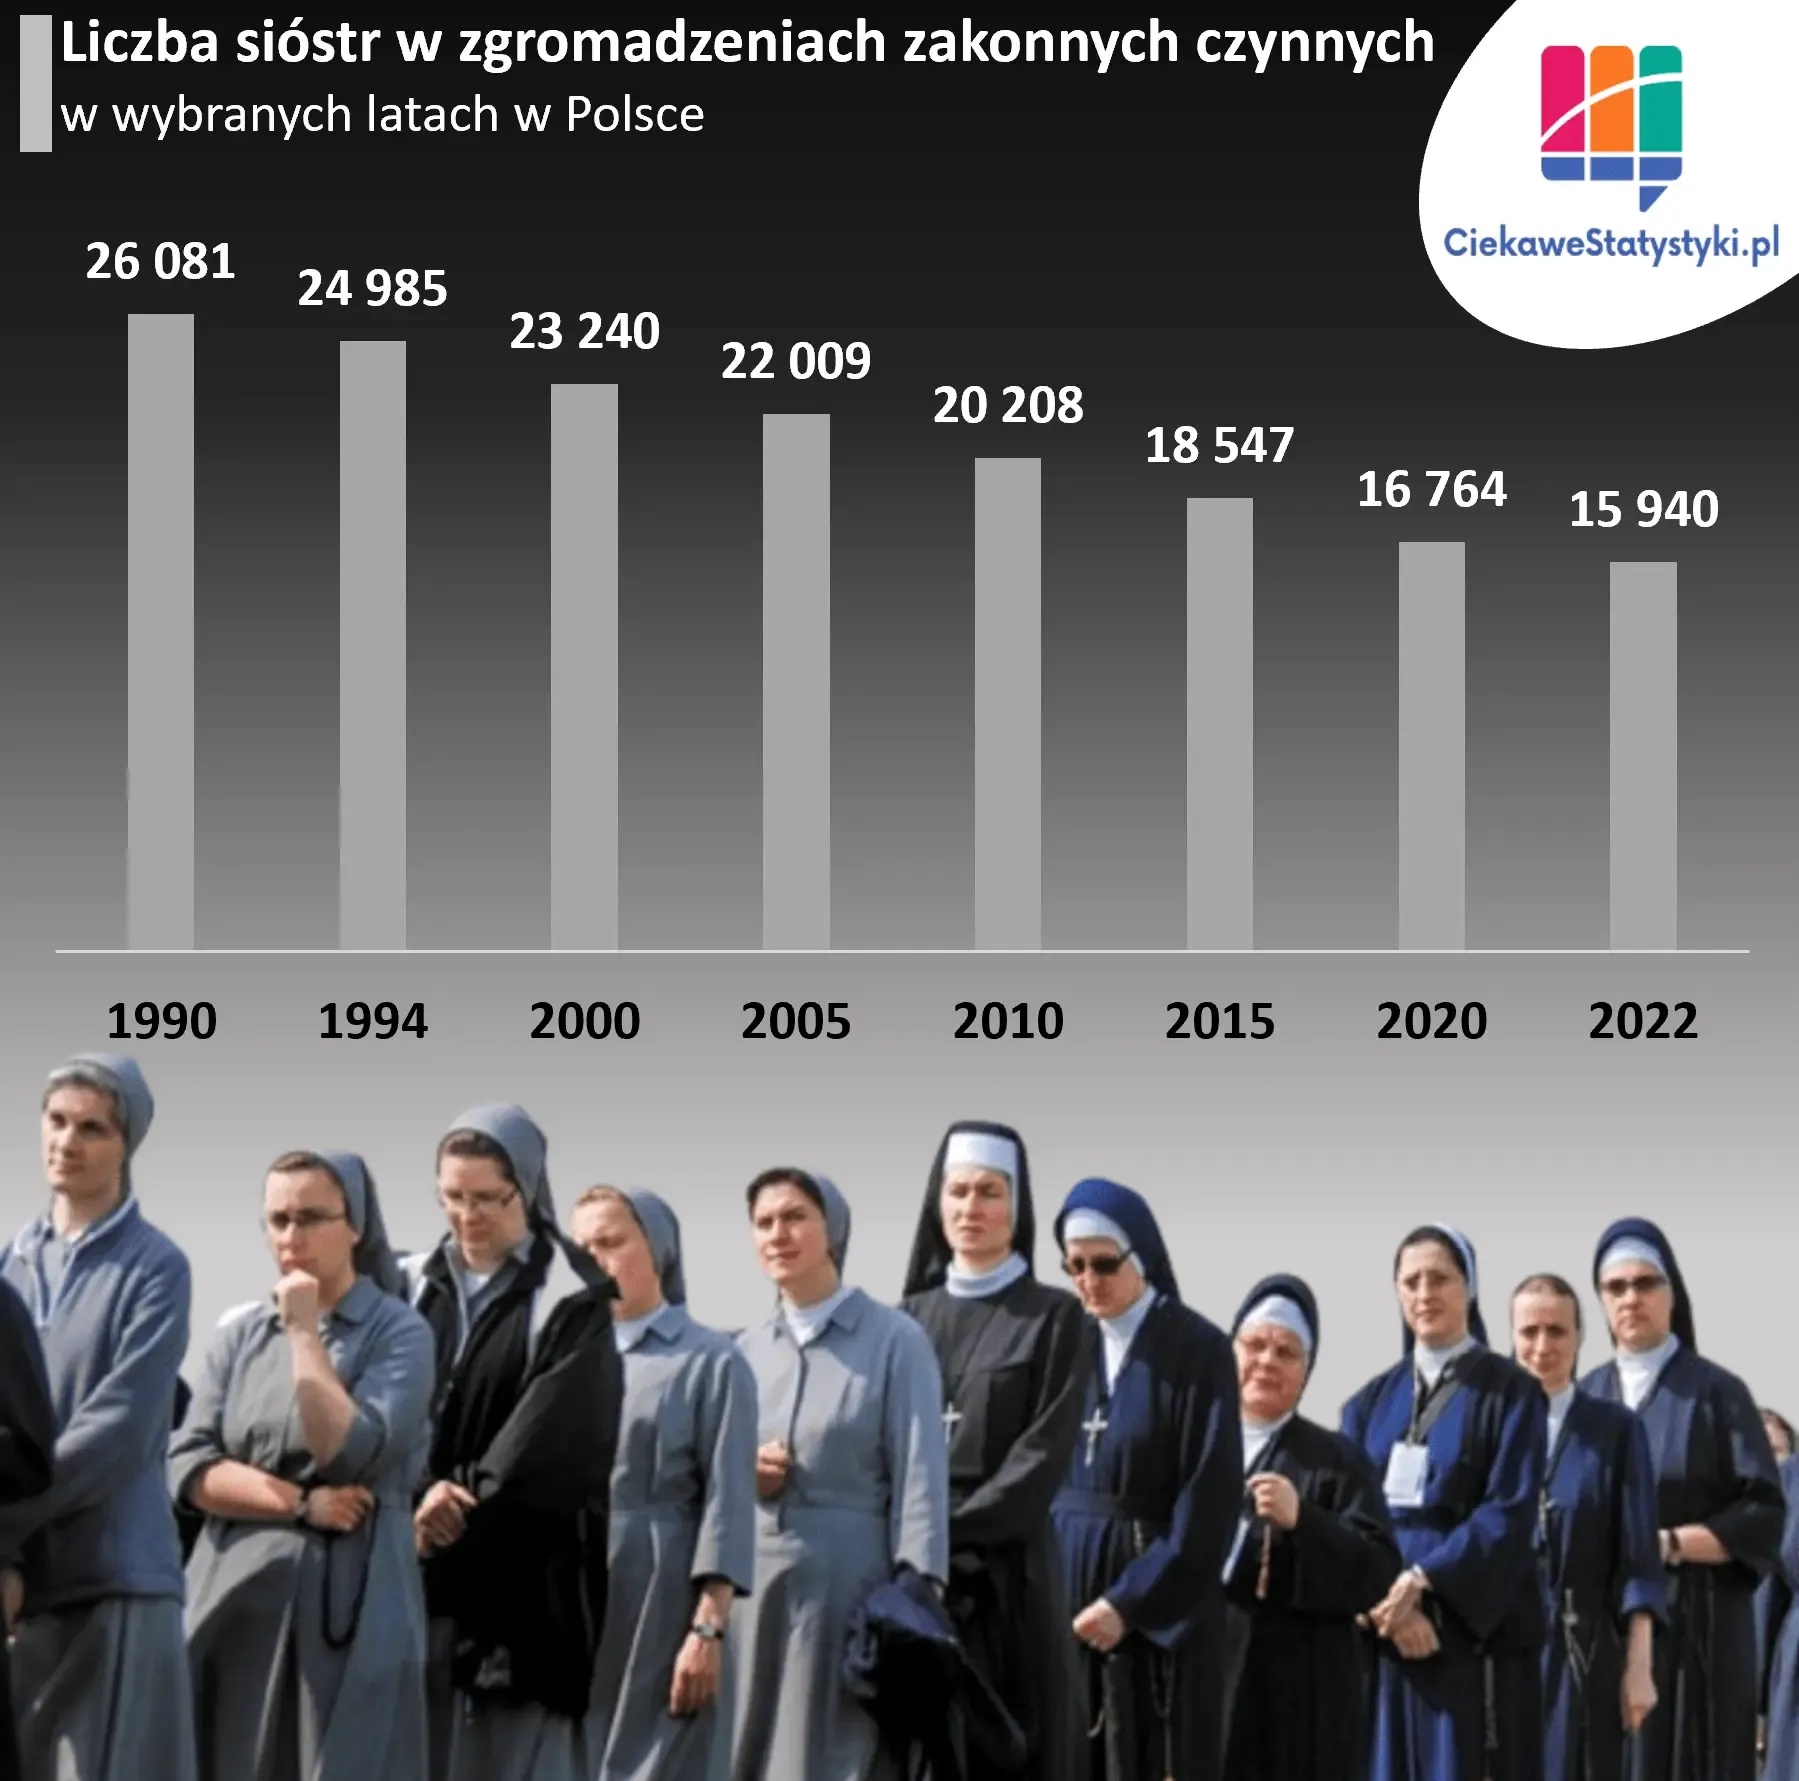 Wykres przedstawia liczbę sióstr zakonnych w Polsce na przestrzeni lat